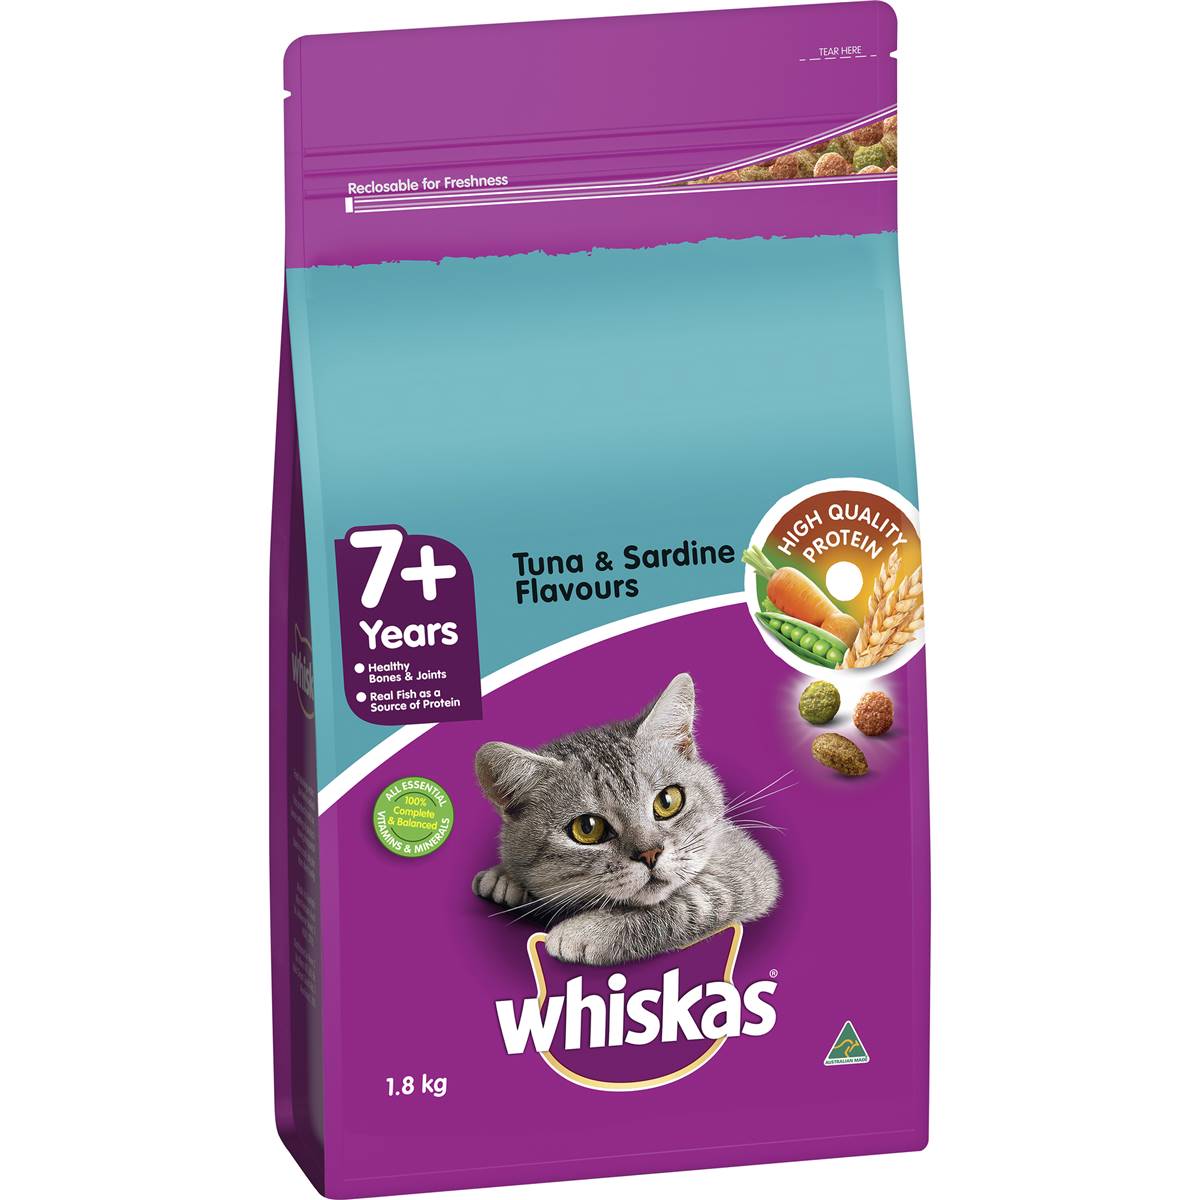 Whiskas Tuna & Sardine 7+ Years Dry Cat Food 1.8kg